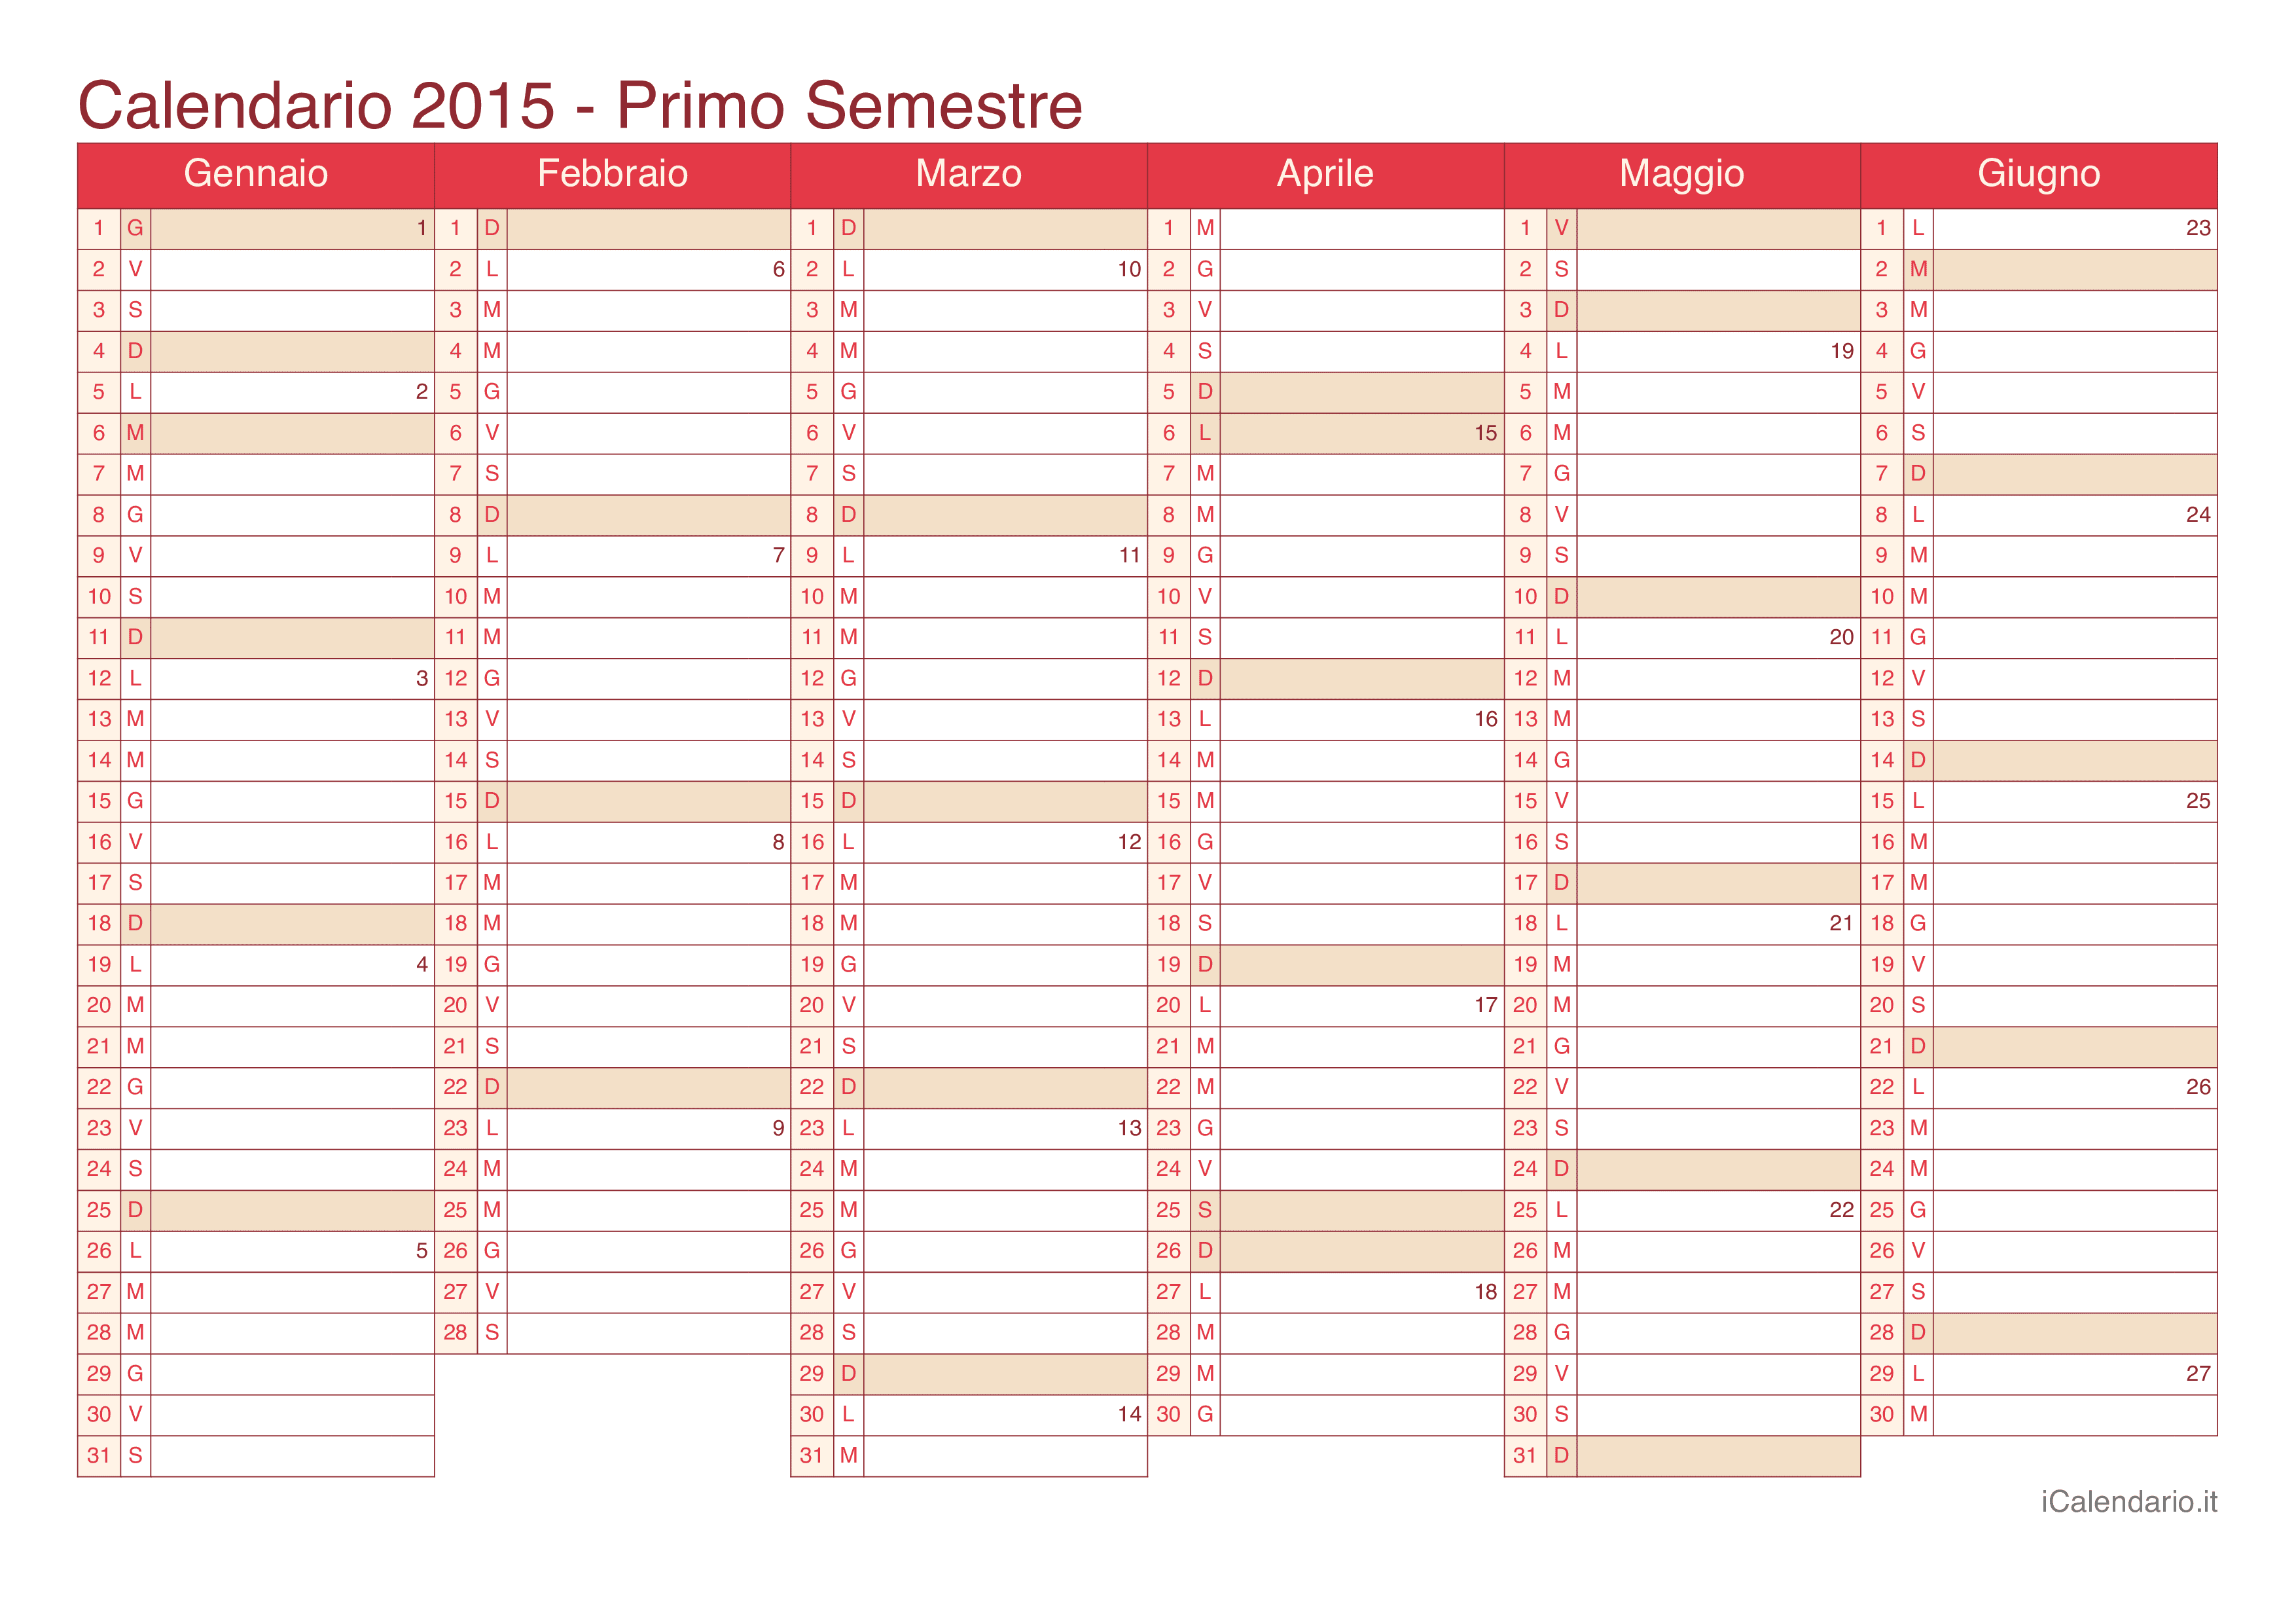 Calendario semestrale con numeri delle settimane 2015 - Cherry